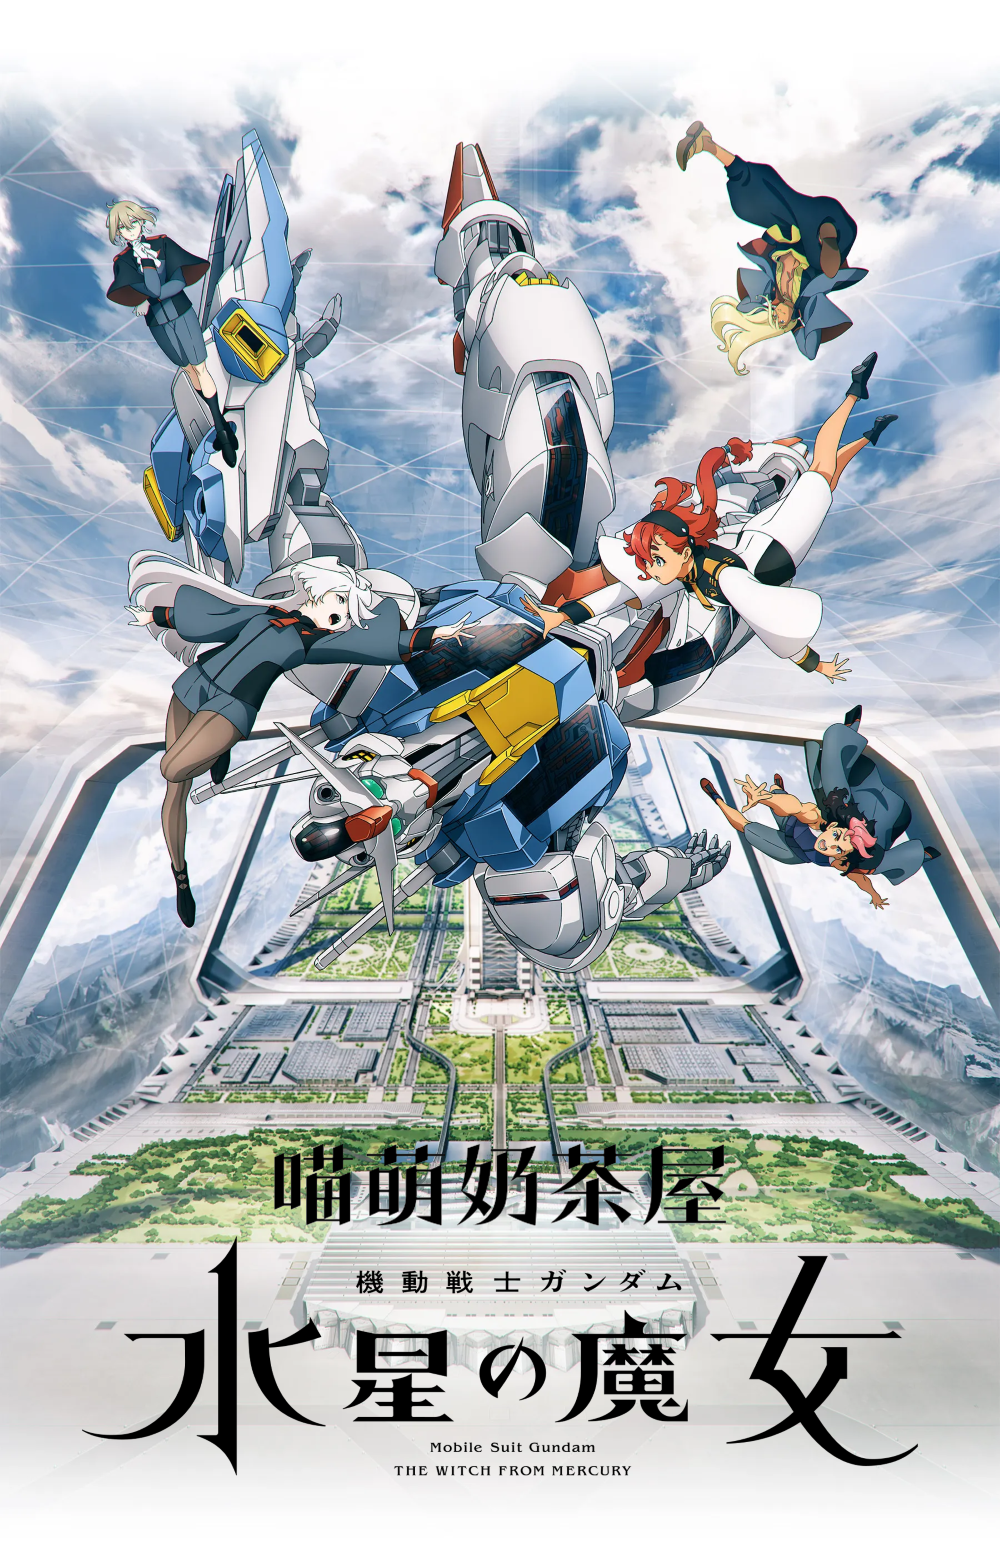 【动漫下载】《机动战士高达 水星的魔女》[Mobile Suit Gundam THE WITCH FROM MERCURY][序幕+01-24][1080p][简日双语][磁力链接] 番剧-第1张